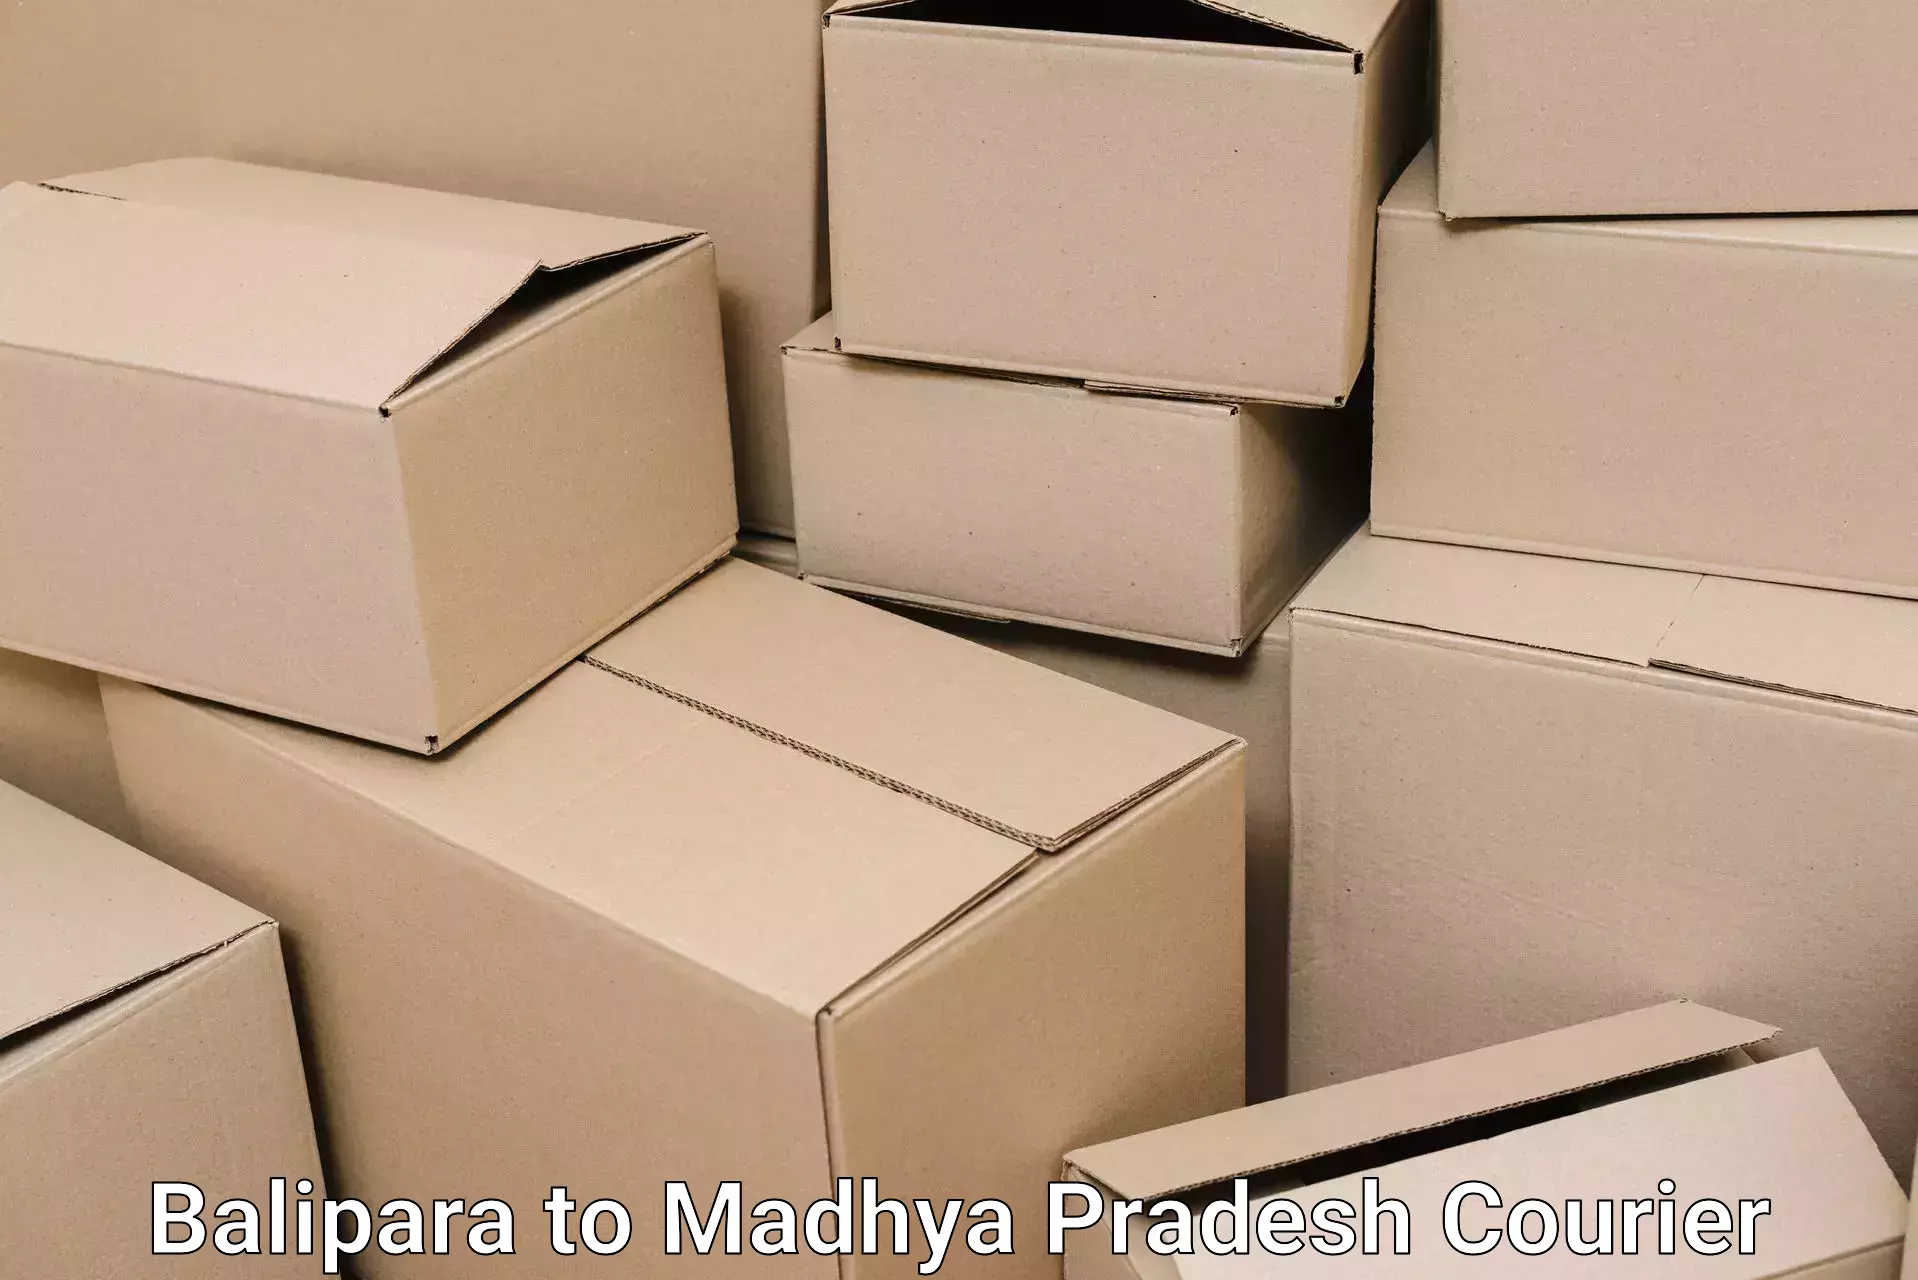 Moving and handling services Balipara to Jatara